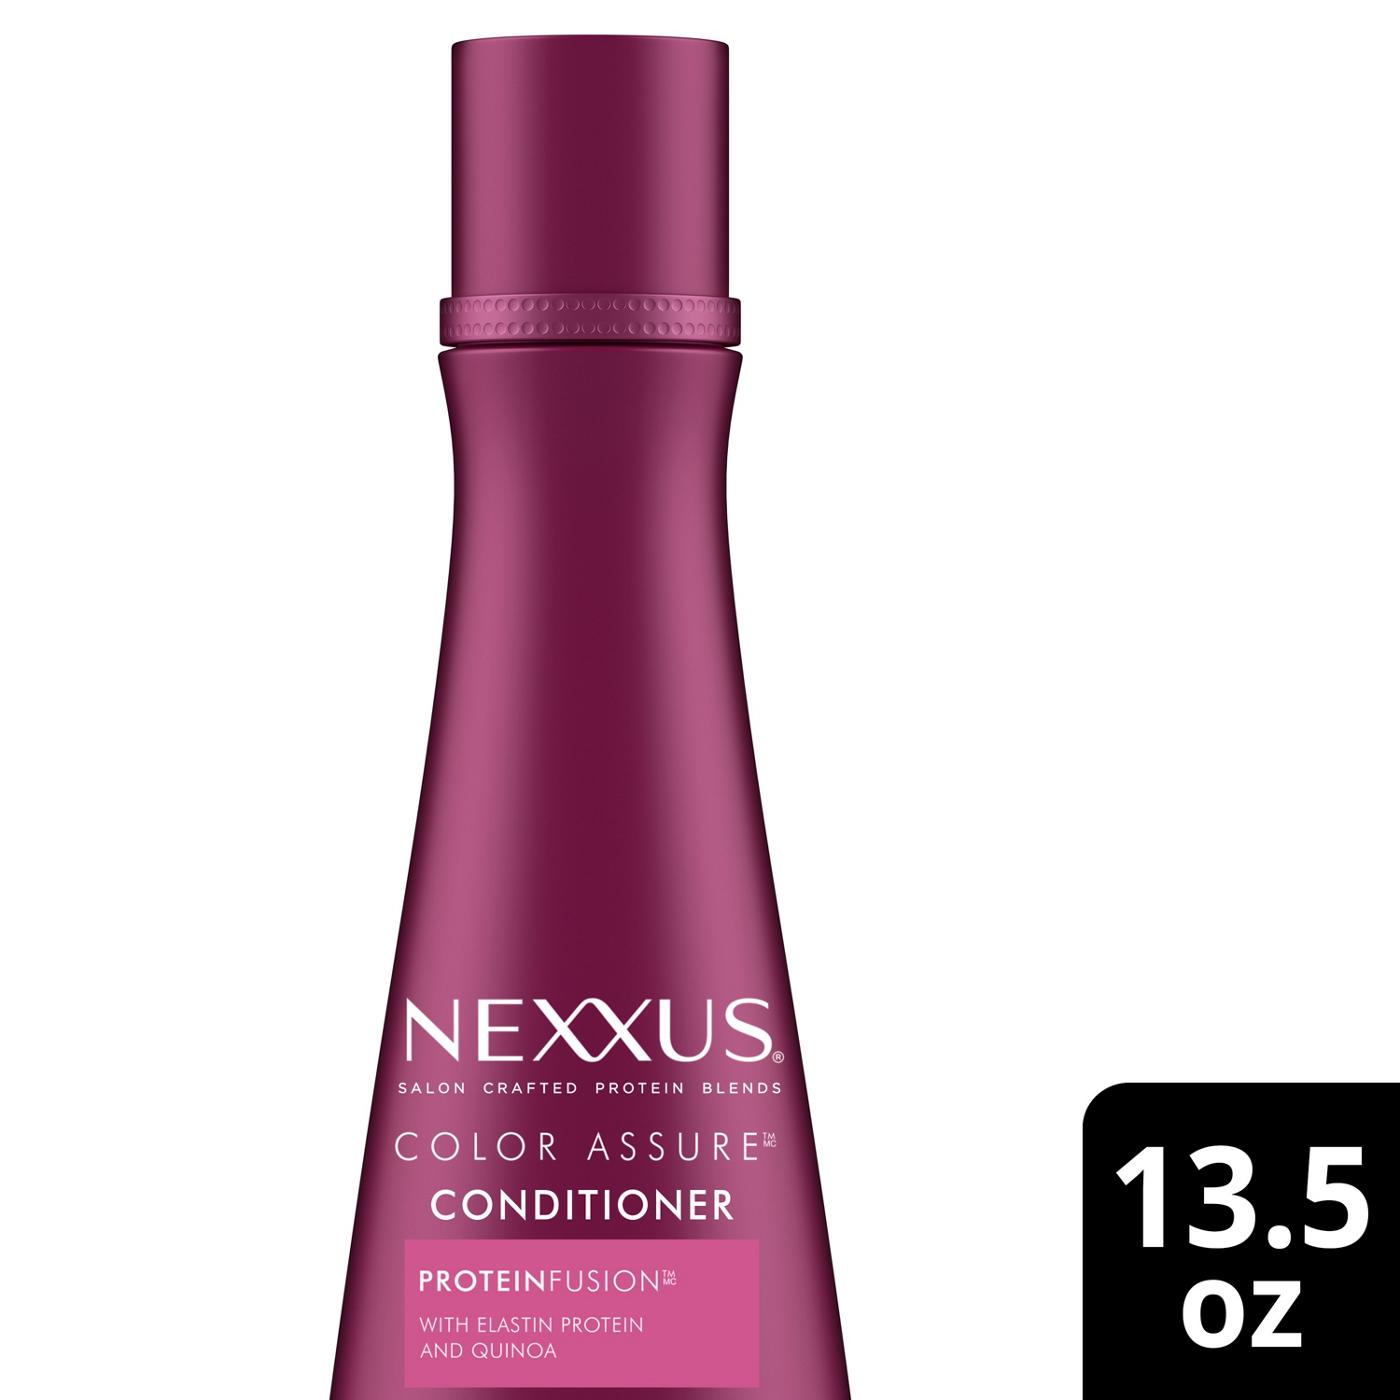 Nexxus Color Assure Conditioner; image 6 of 13